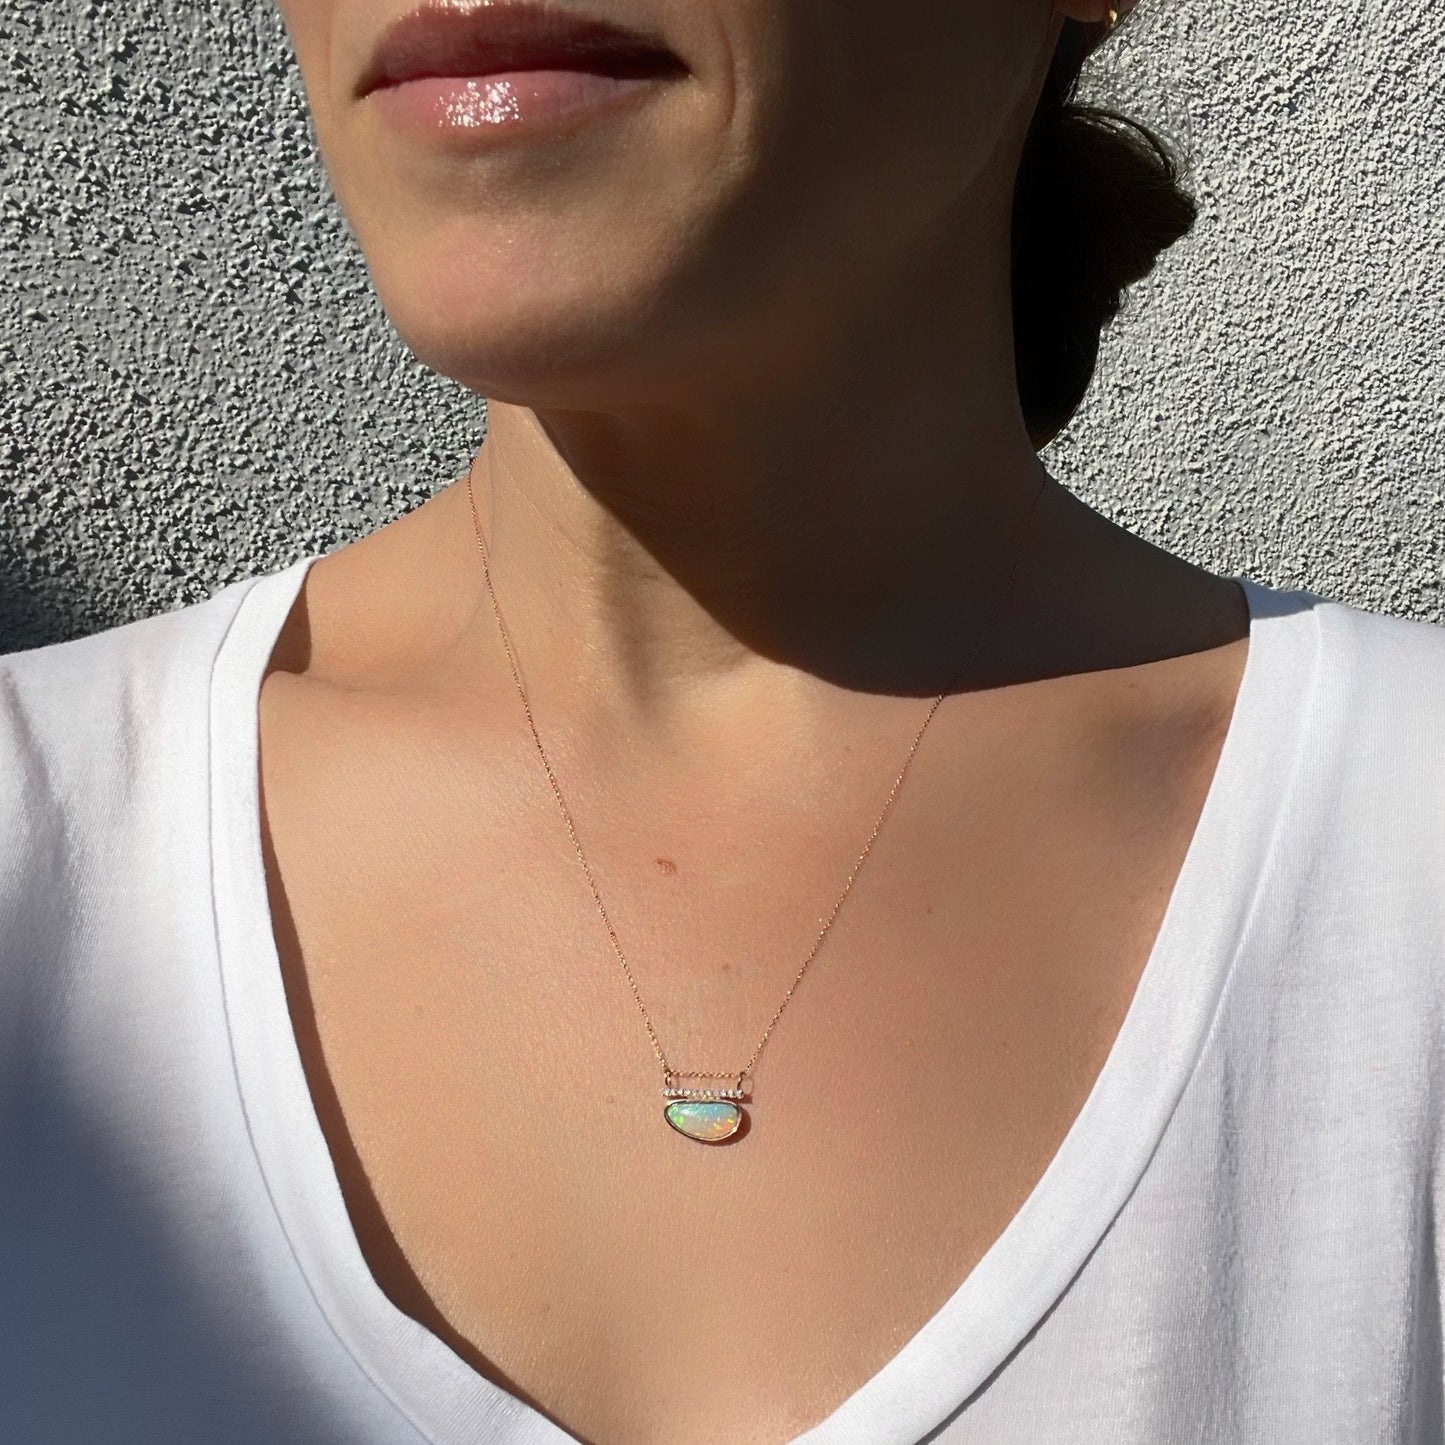 Australian opal necklace by NIXIN Jewelry on model